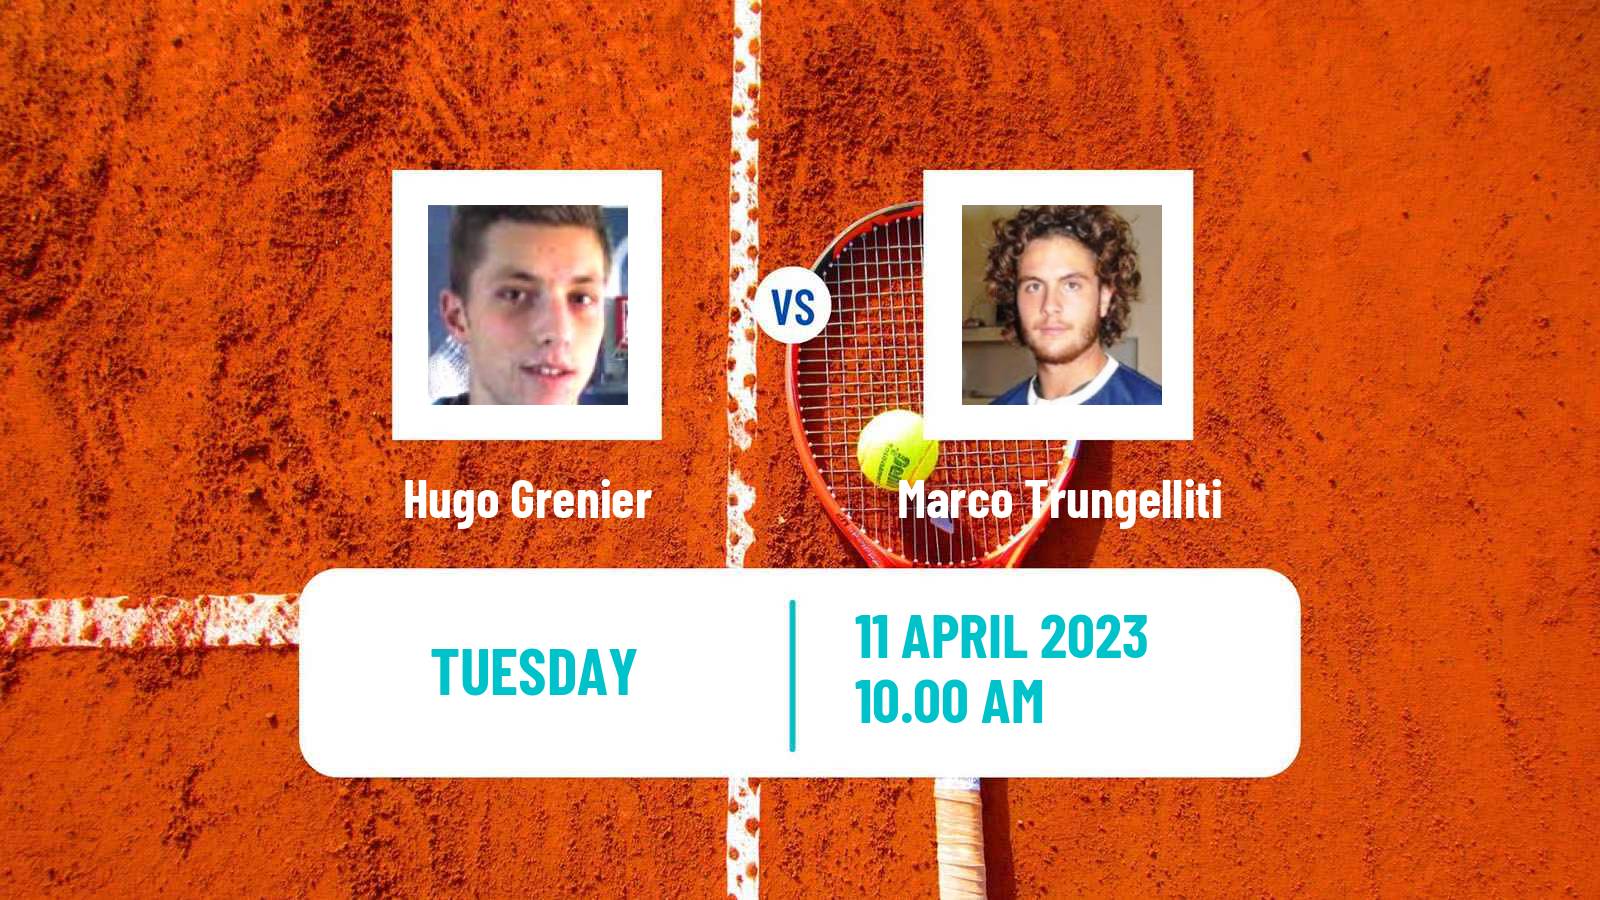 Tennis ATP Challenger Hugo Grenier - Marco Trungelliti